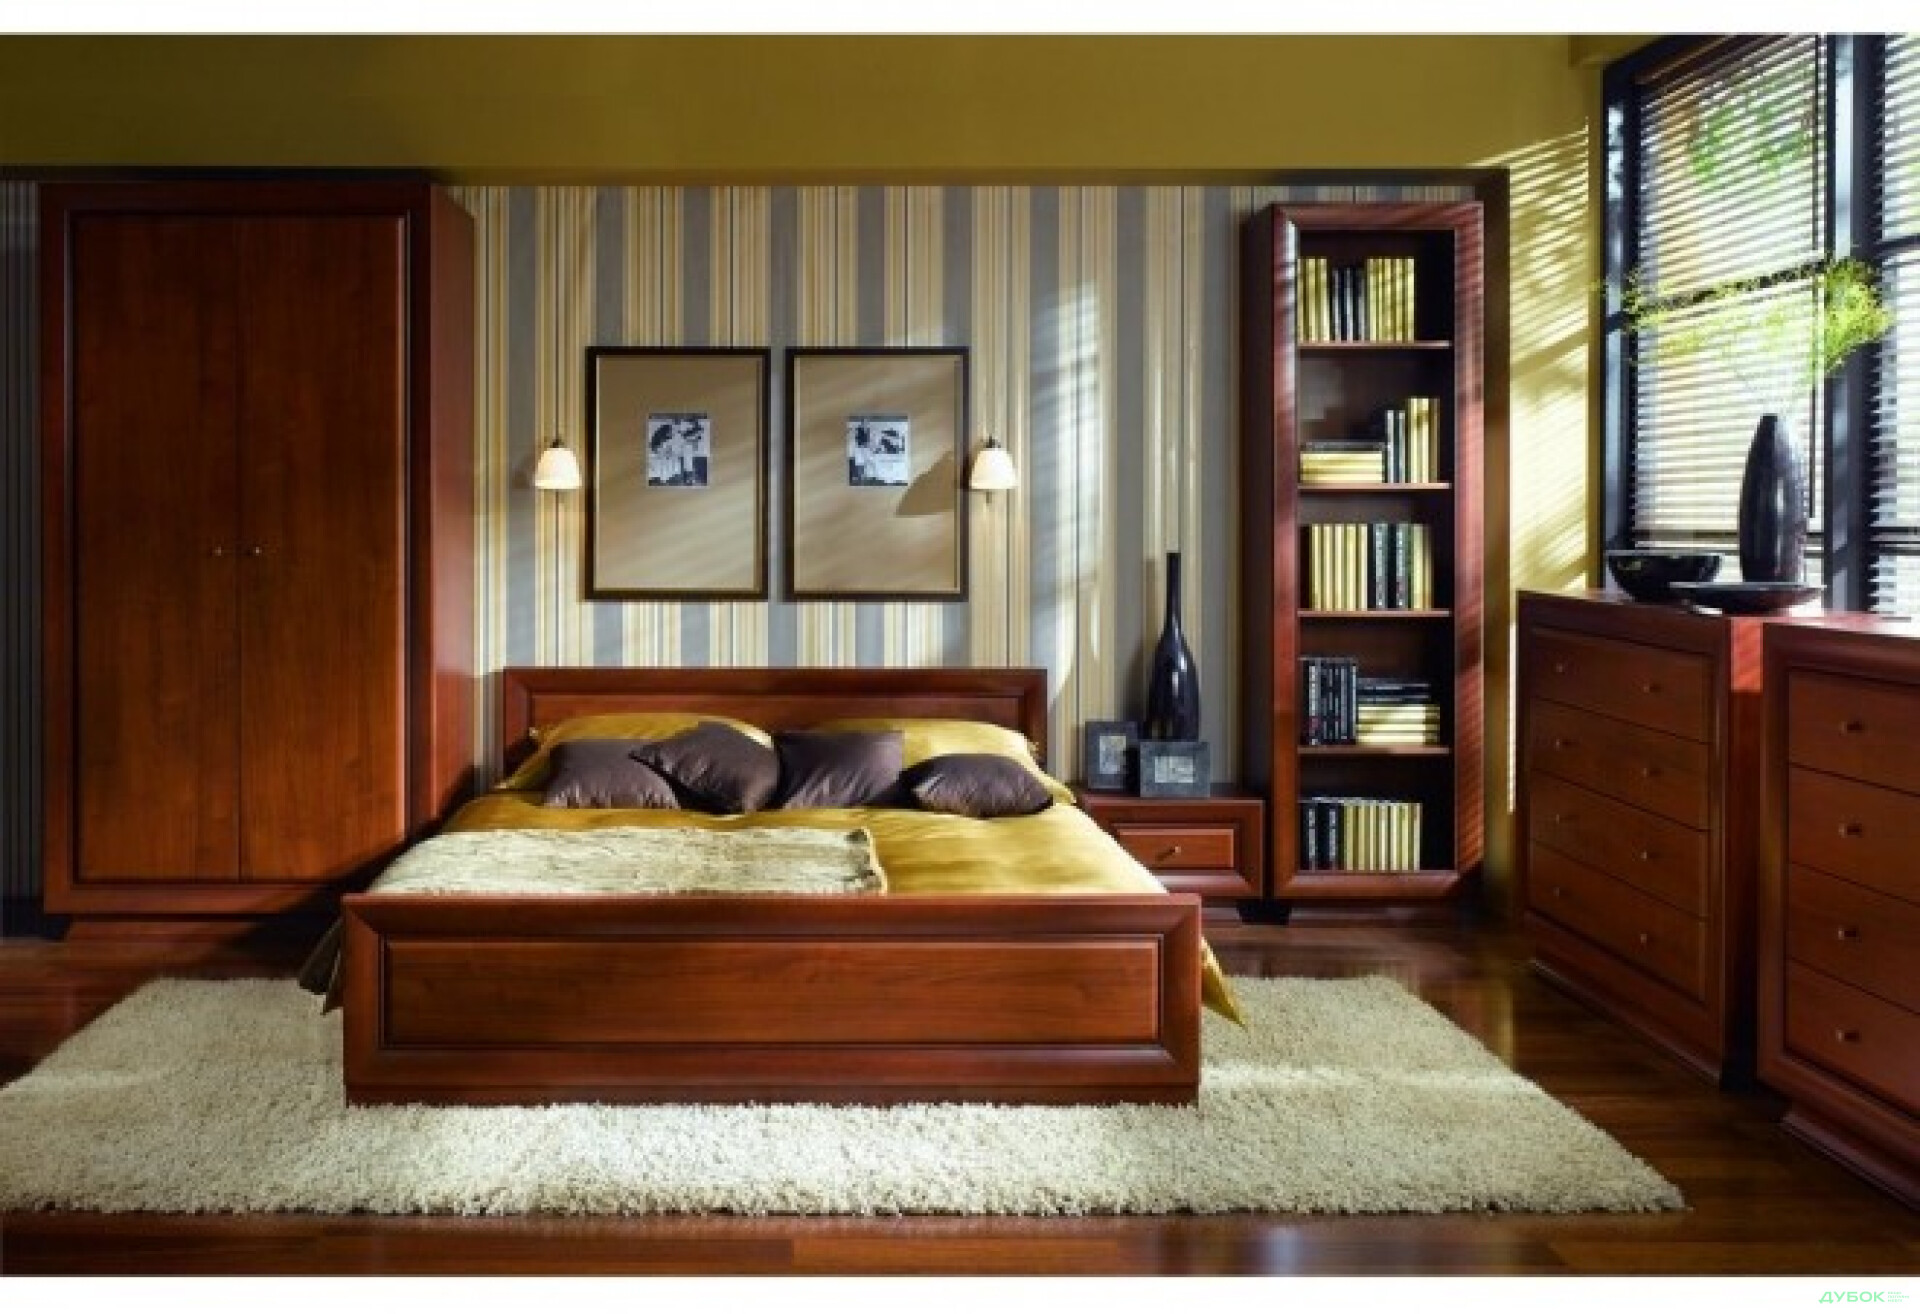 Фото 1 - Спальня Ларго Класік / Largo Classic Спальня 2Д ВМК